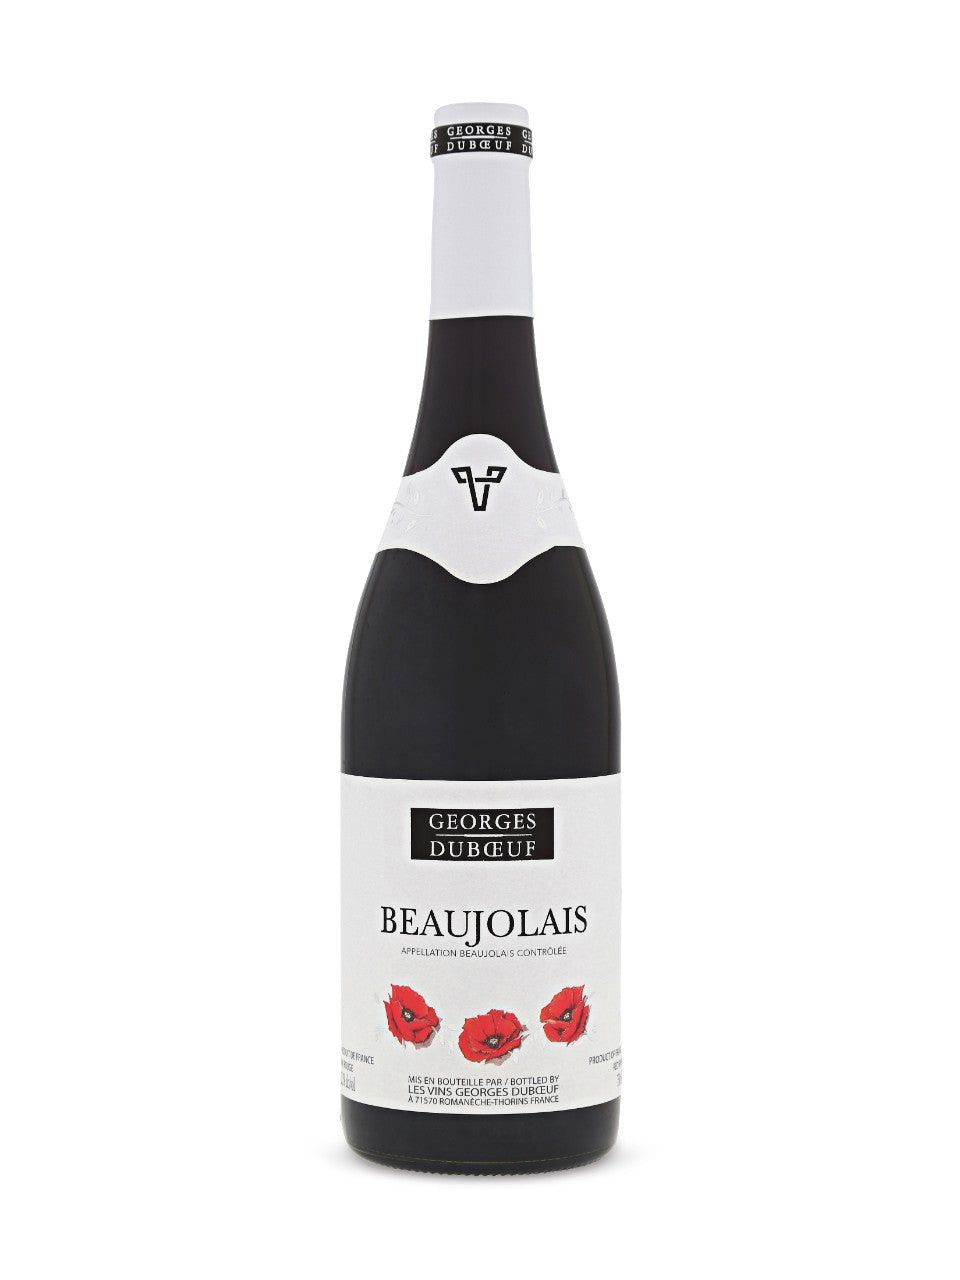 Georges Duboeuf Beaujolais AOC 750 mL bottle